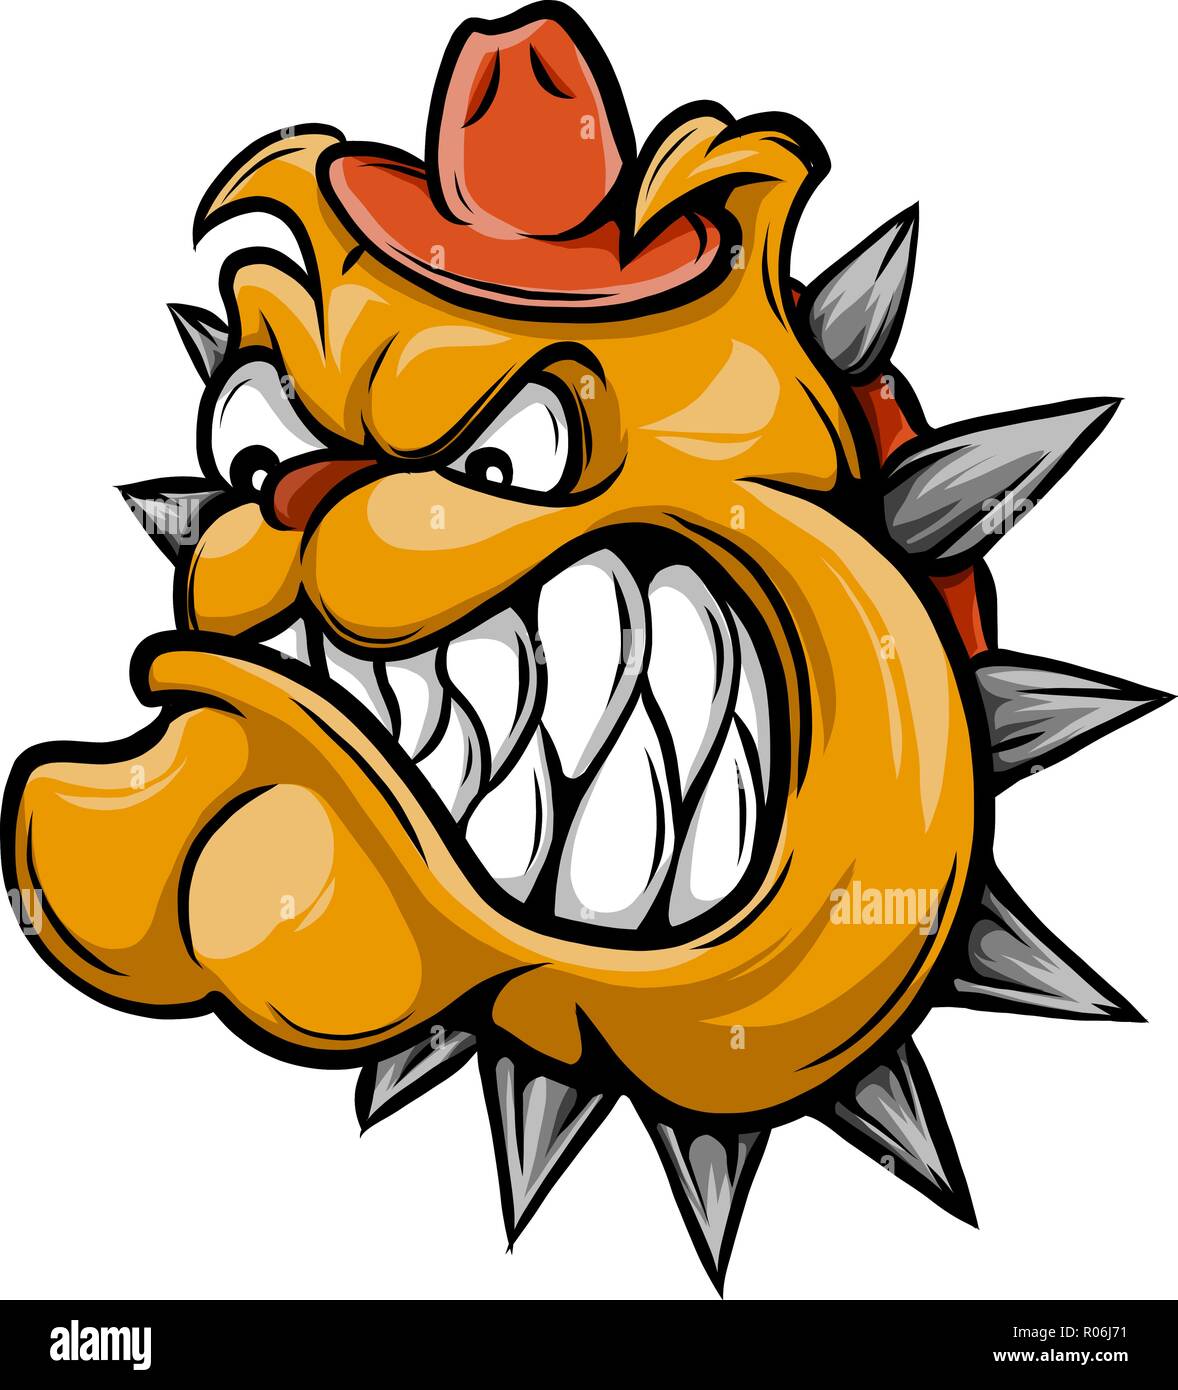 Una illustrazione di una feroce bulldog carattere animale o sport mascot Illustrazione Vettoriale